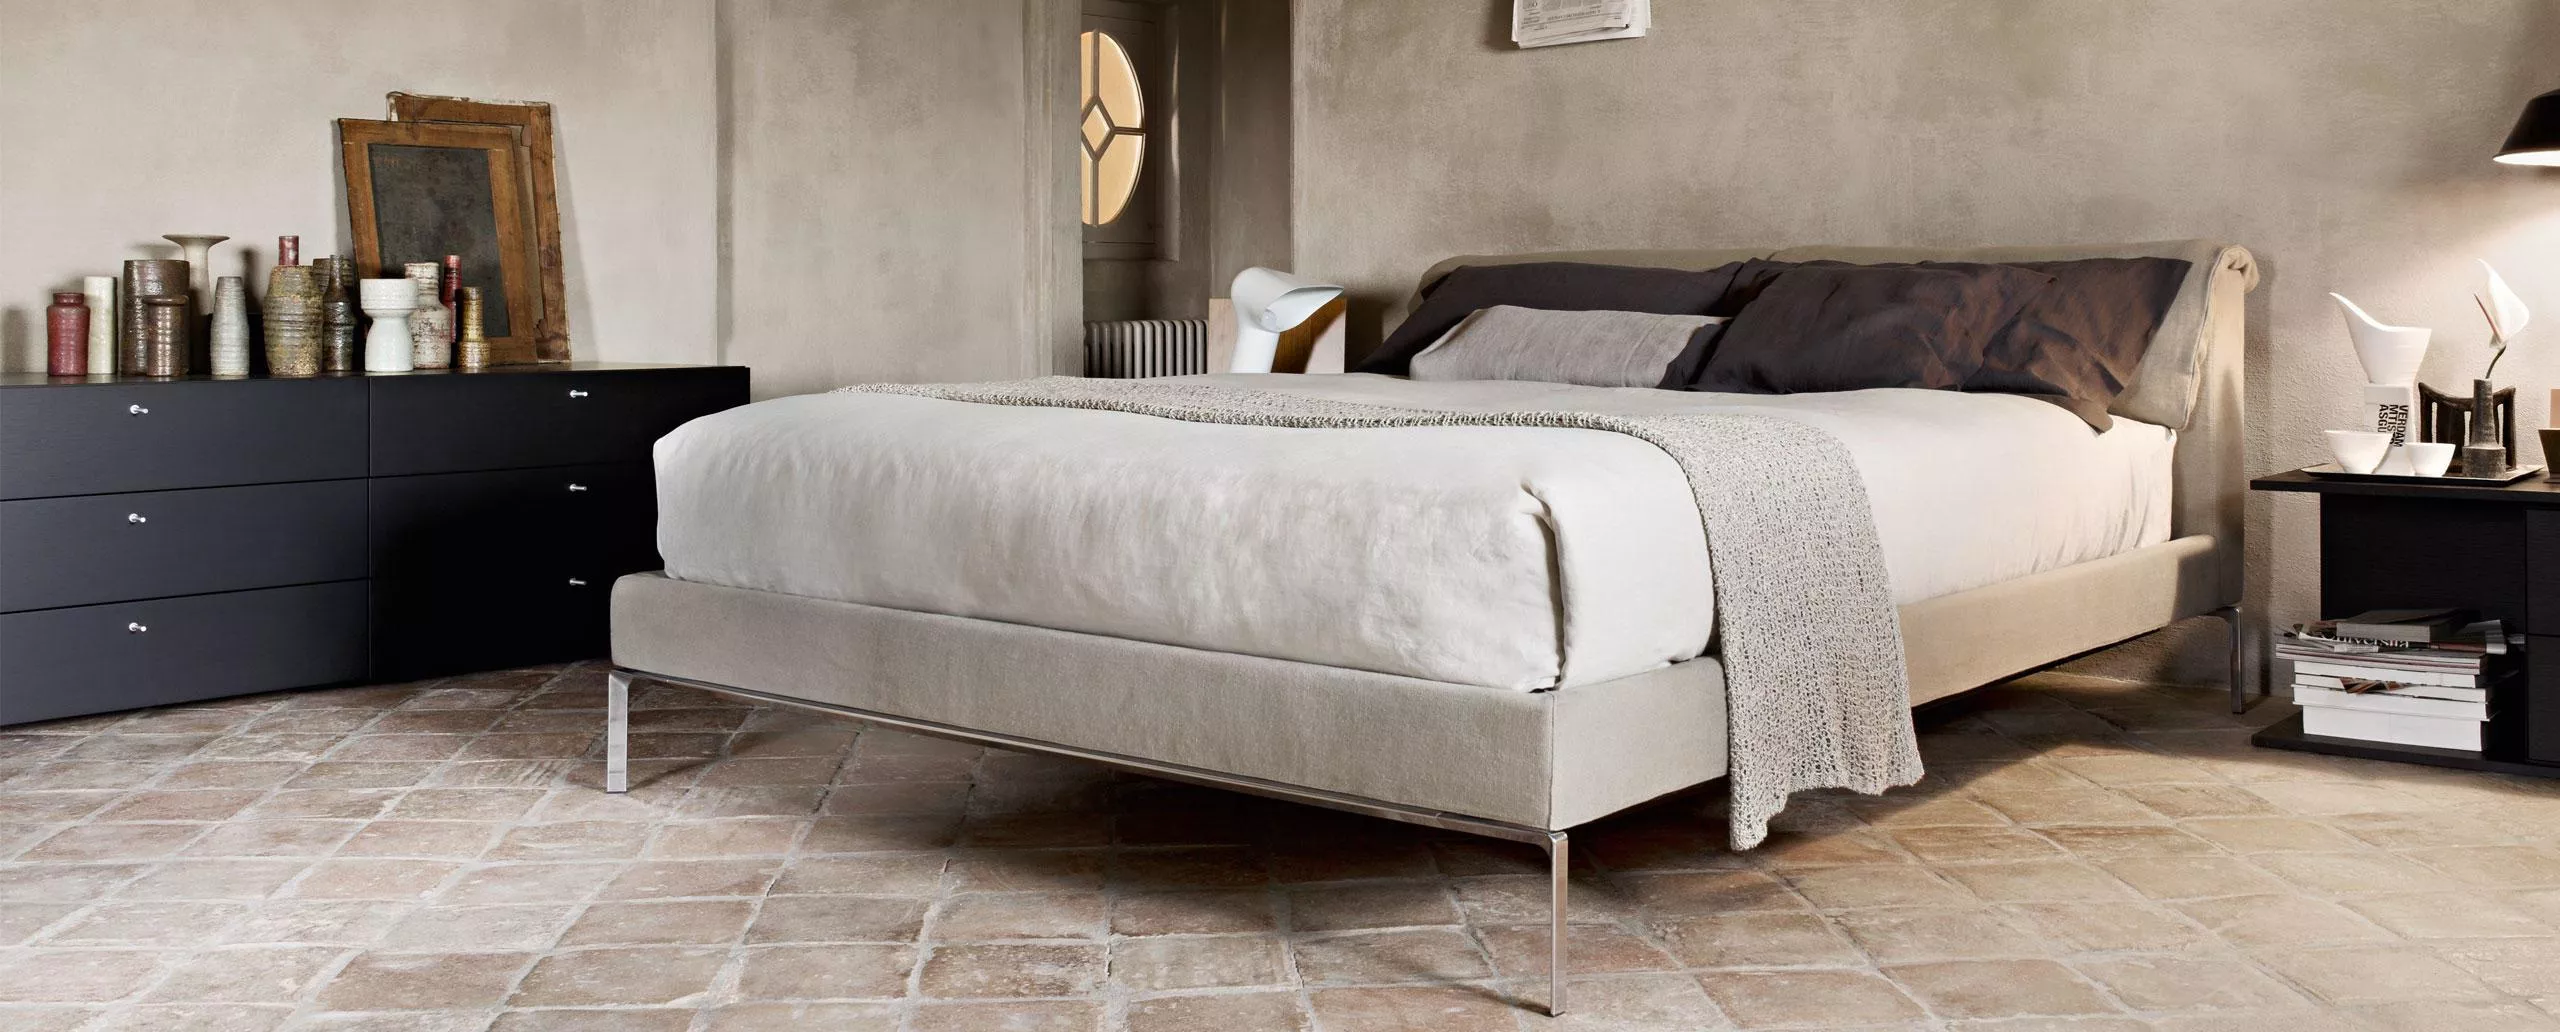 Кровать Moov Cassina L32 — купить по цене фабрики